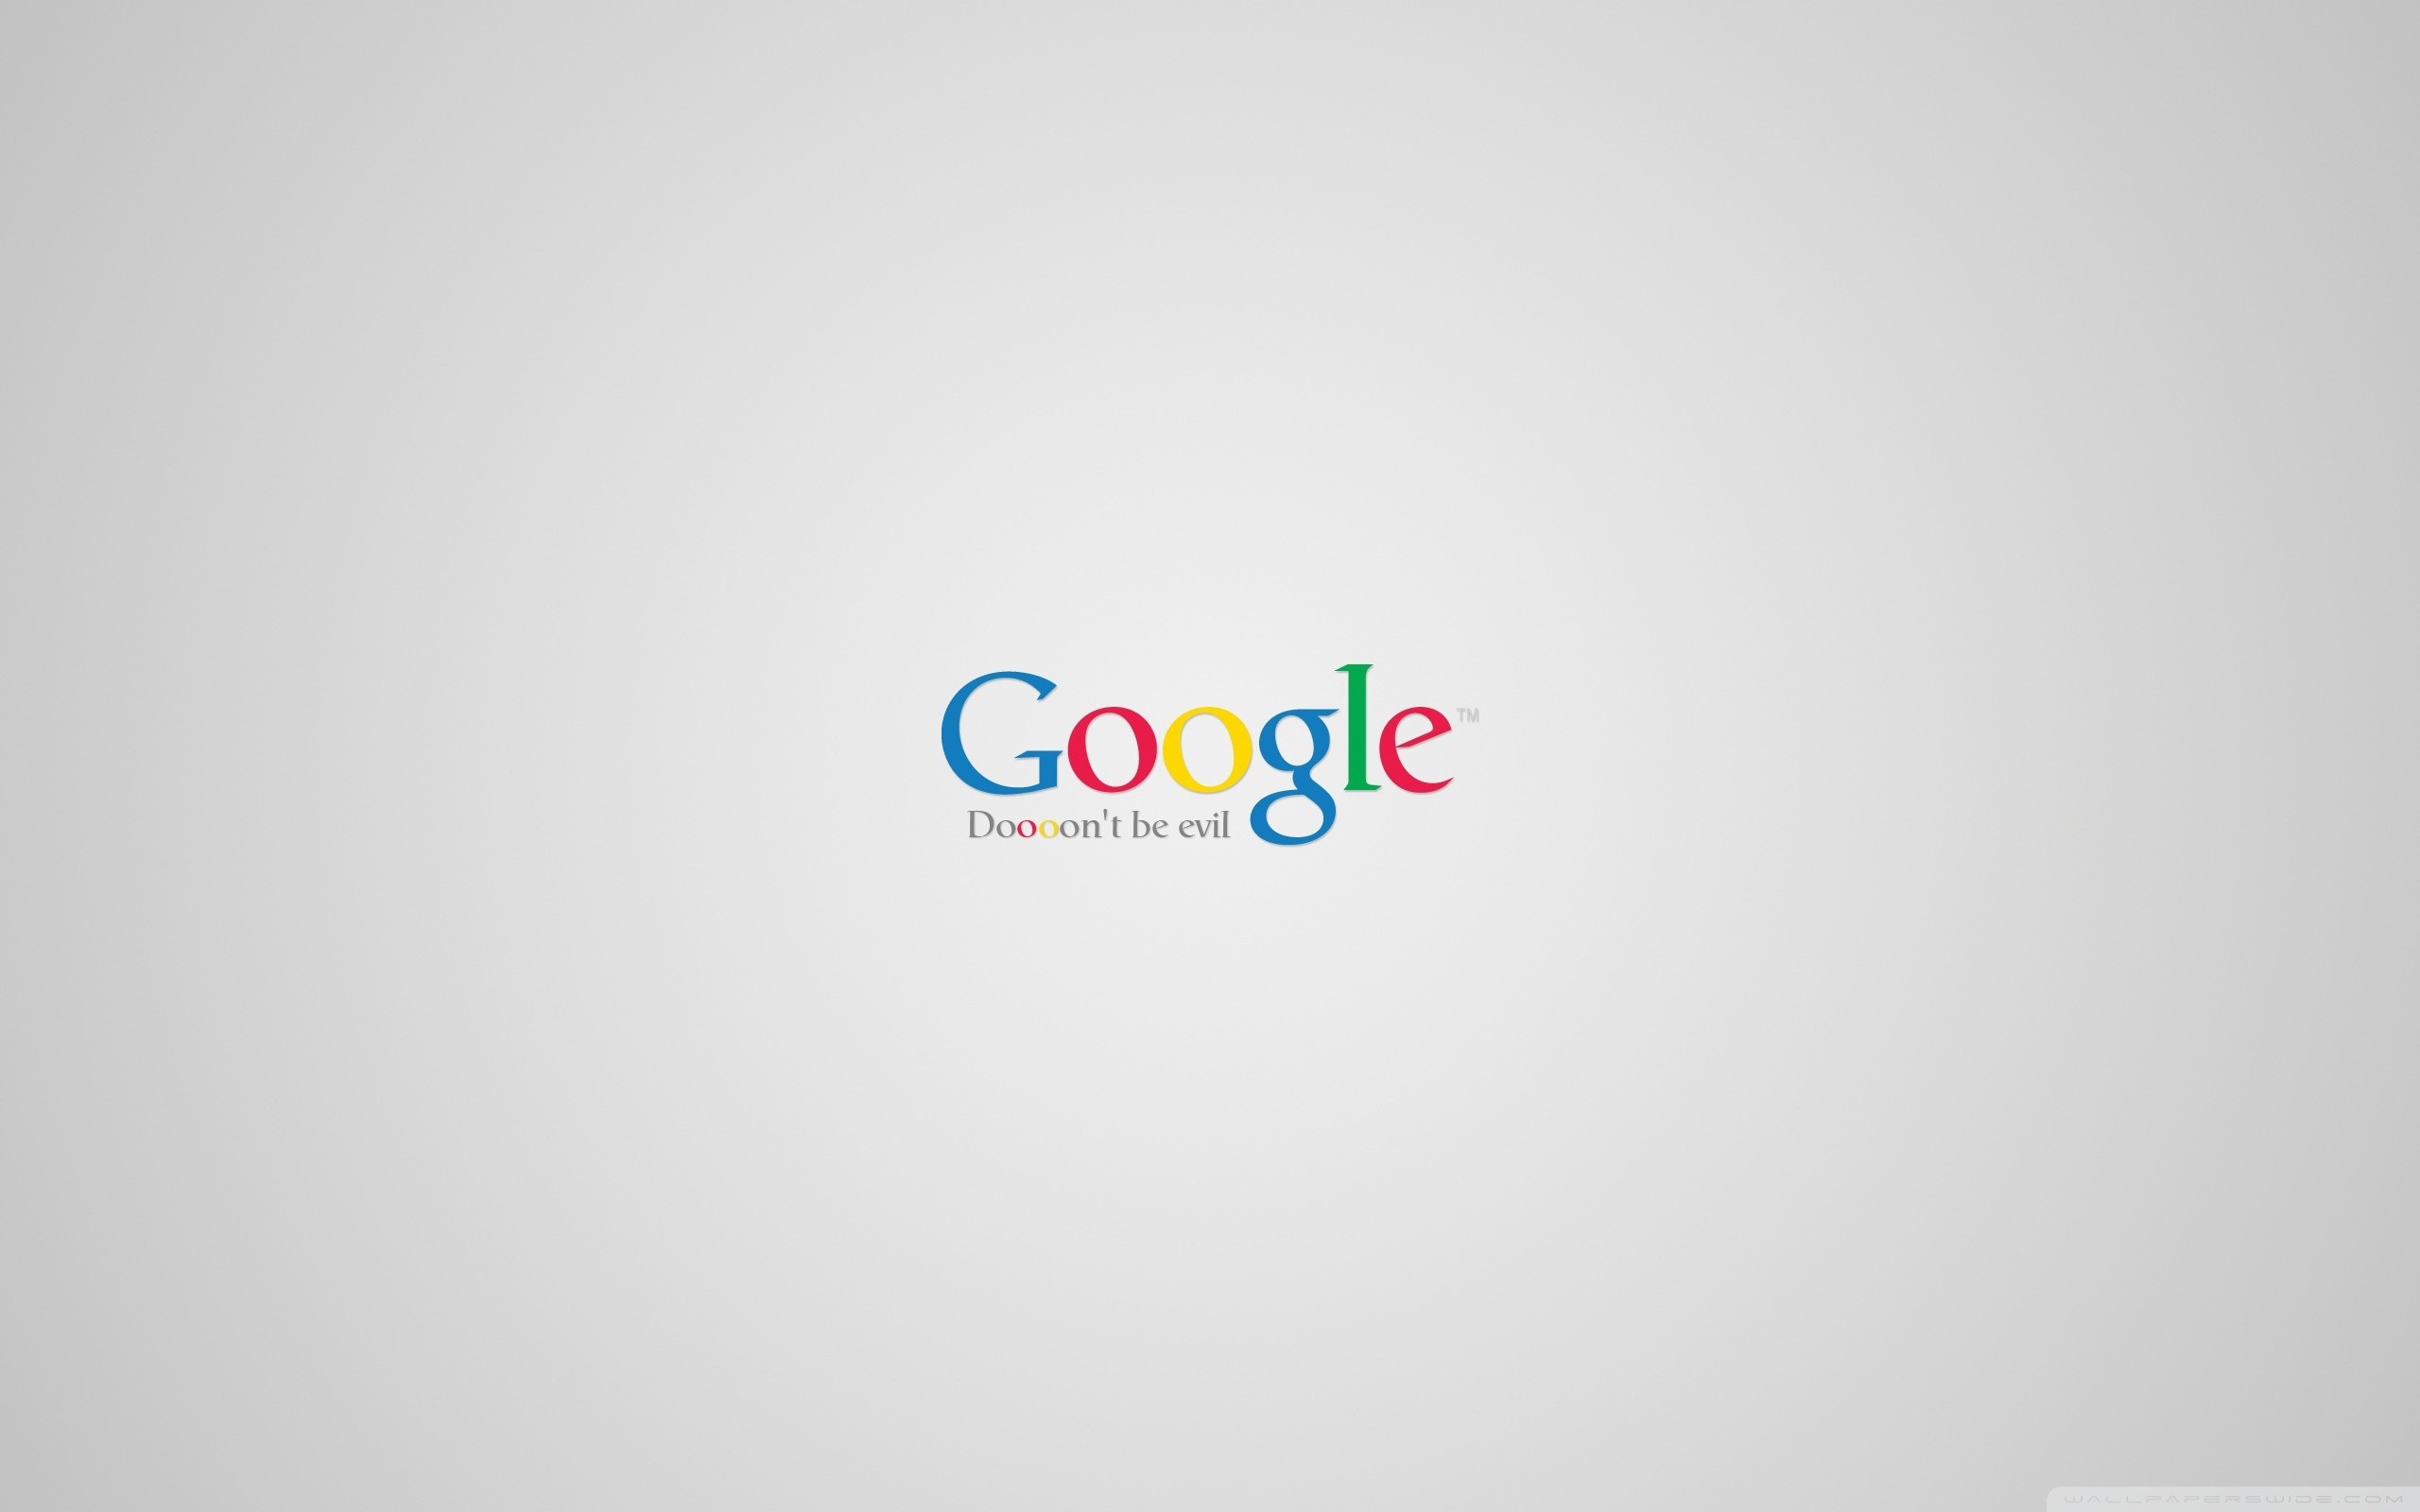 Google Logo Wallpapers For Mobile - Wallpaper Cave-mncb.edu.vn